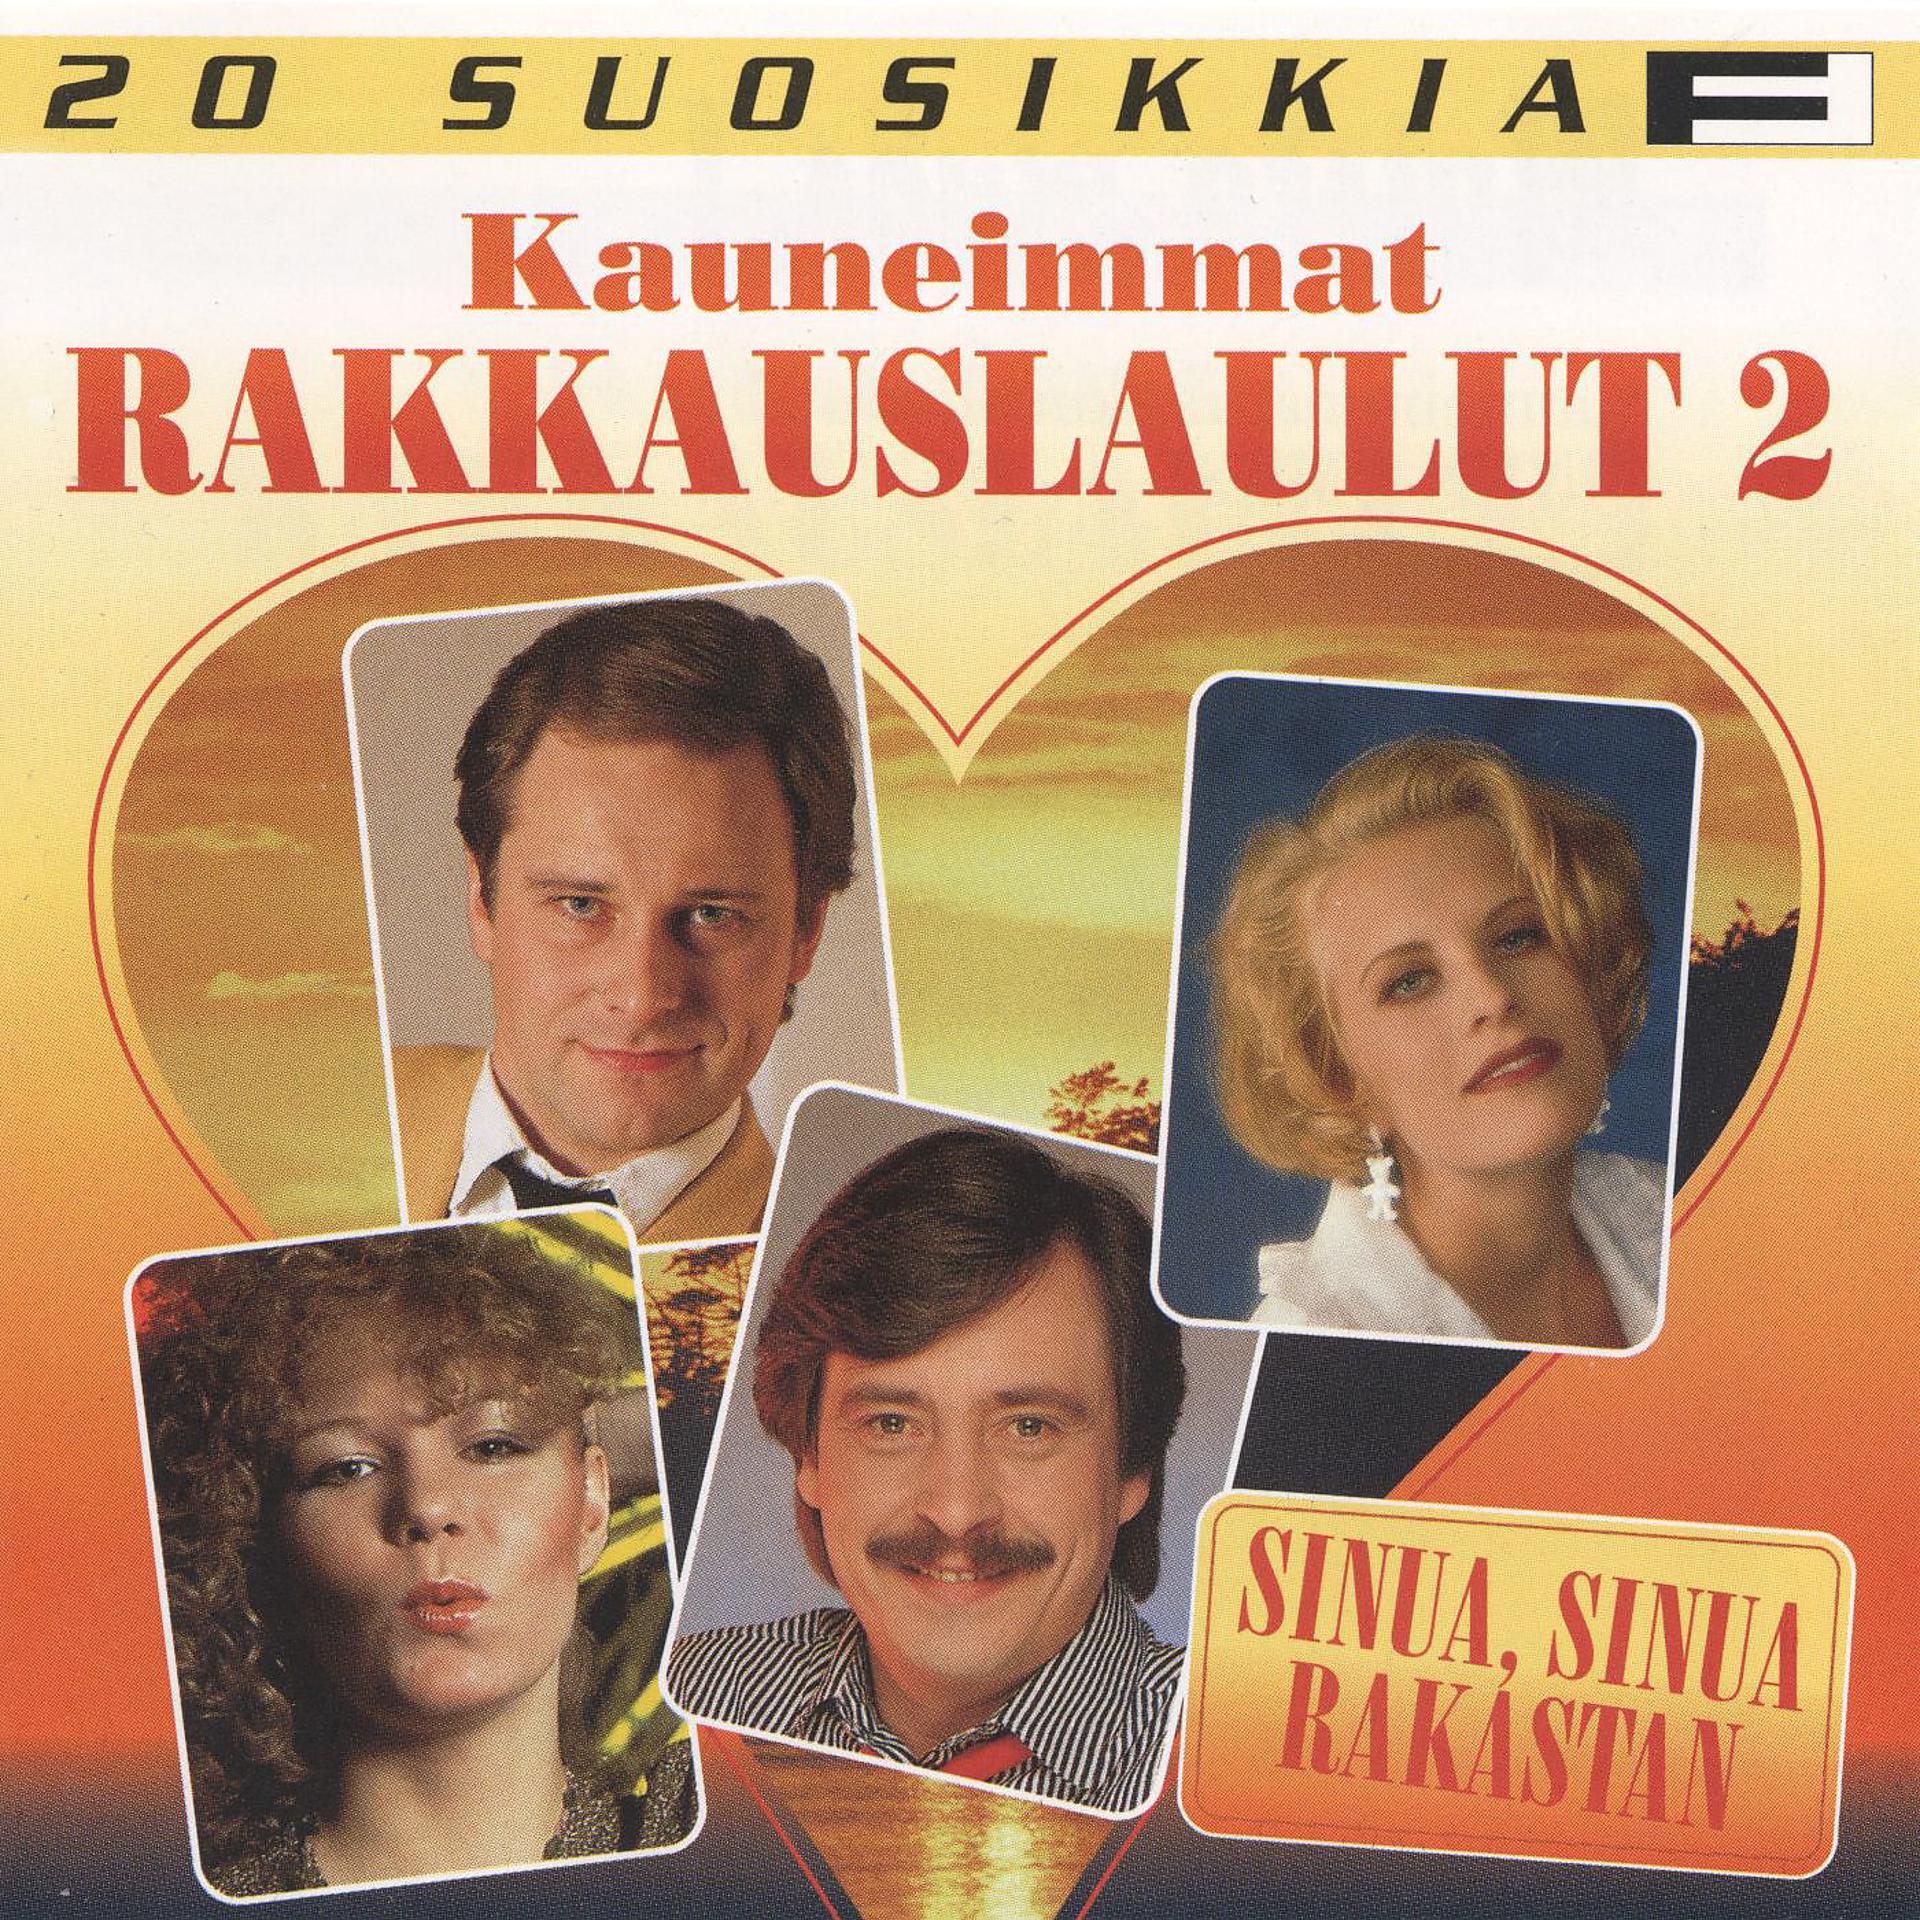 Постер альбома 20 Suosikkia / Kauneimmat rakkauslaulut 2 / Sinua, sinua rakastan